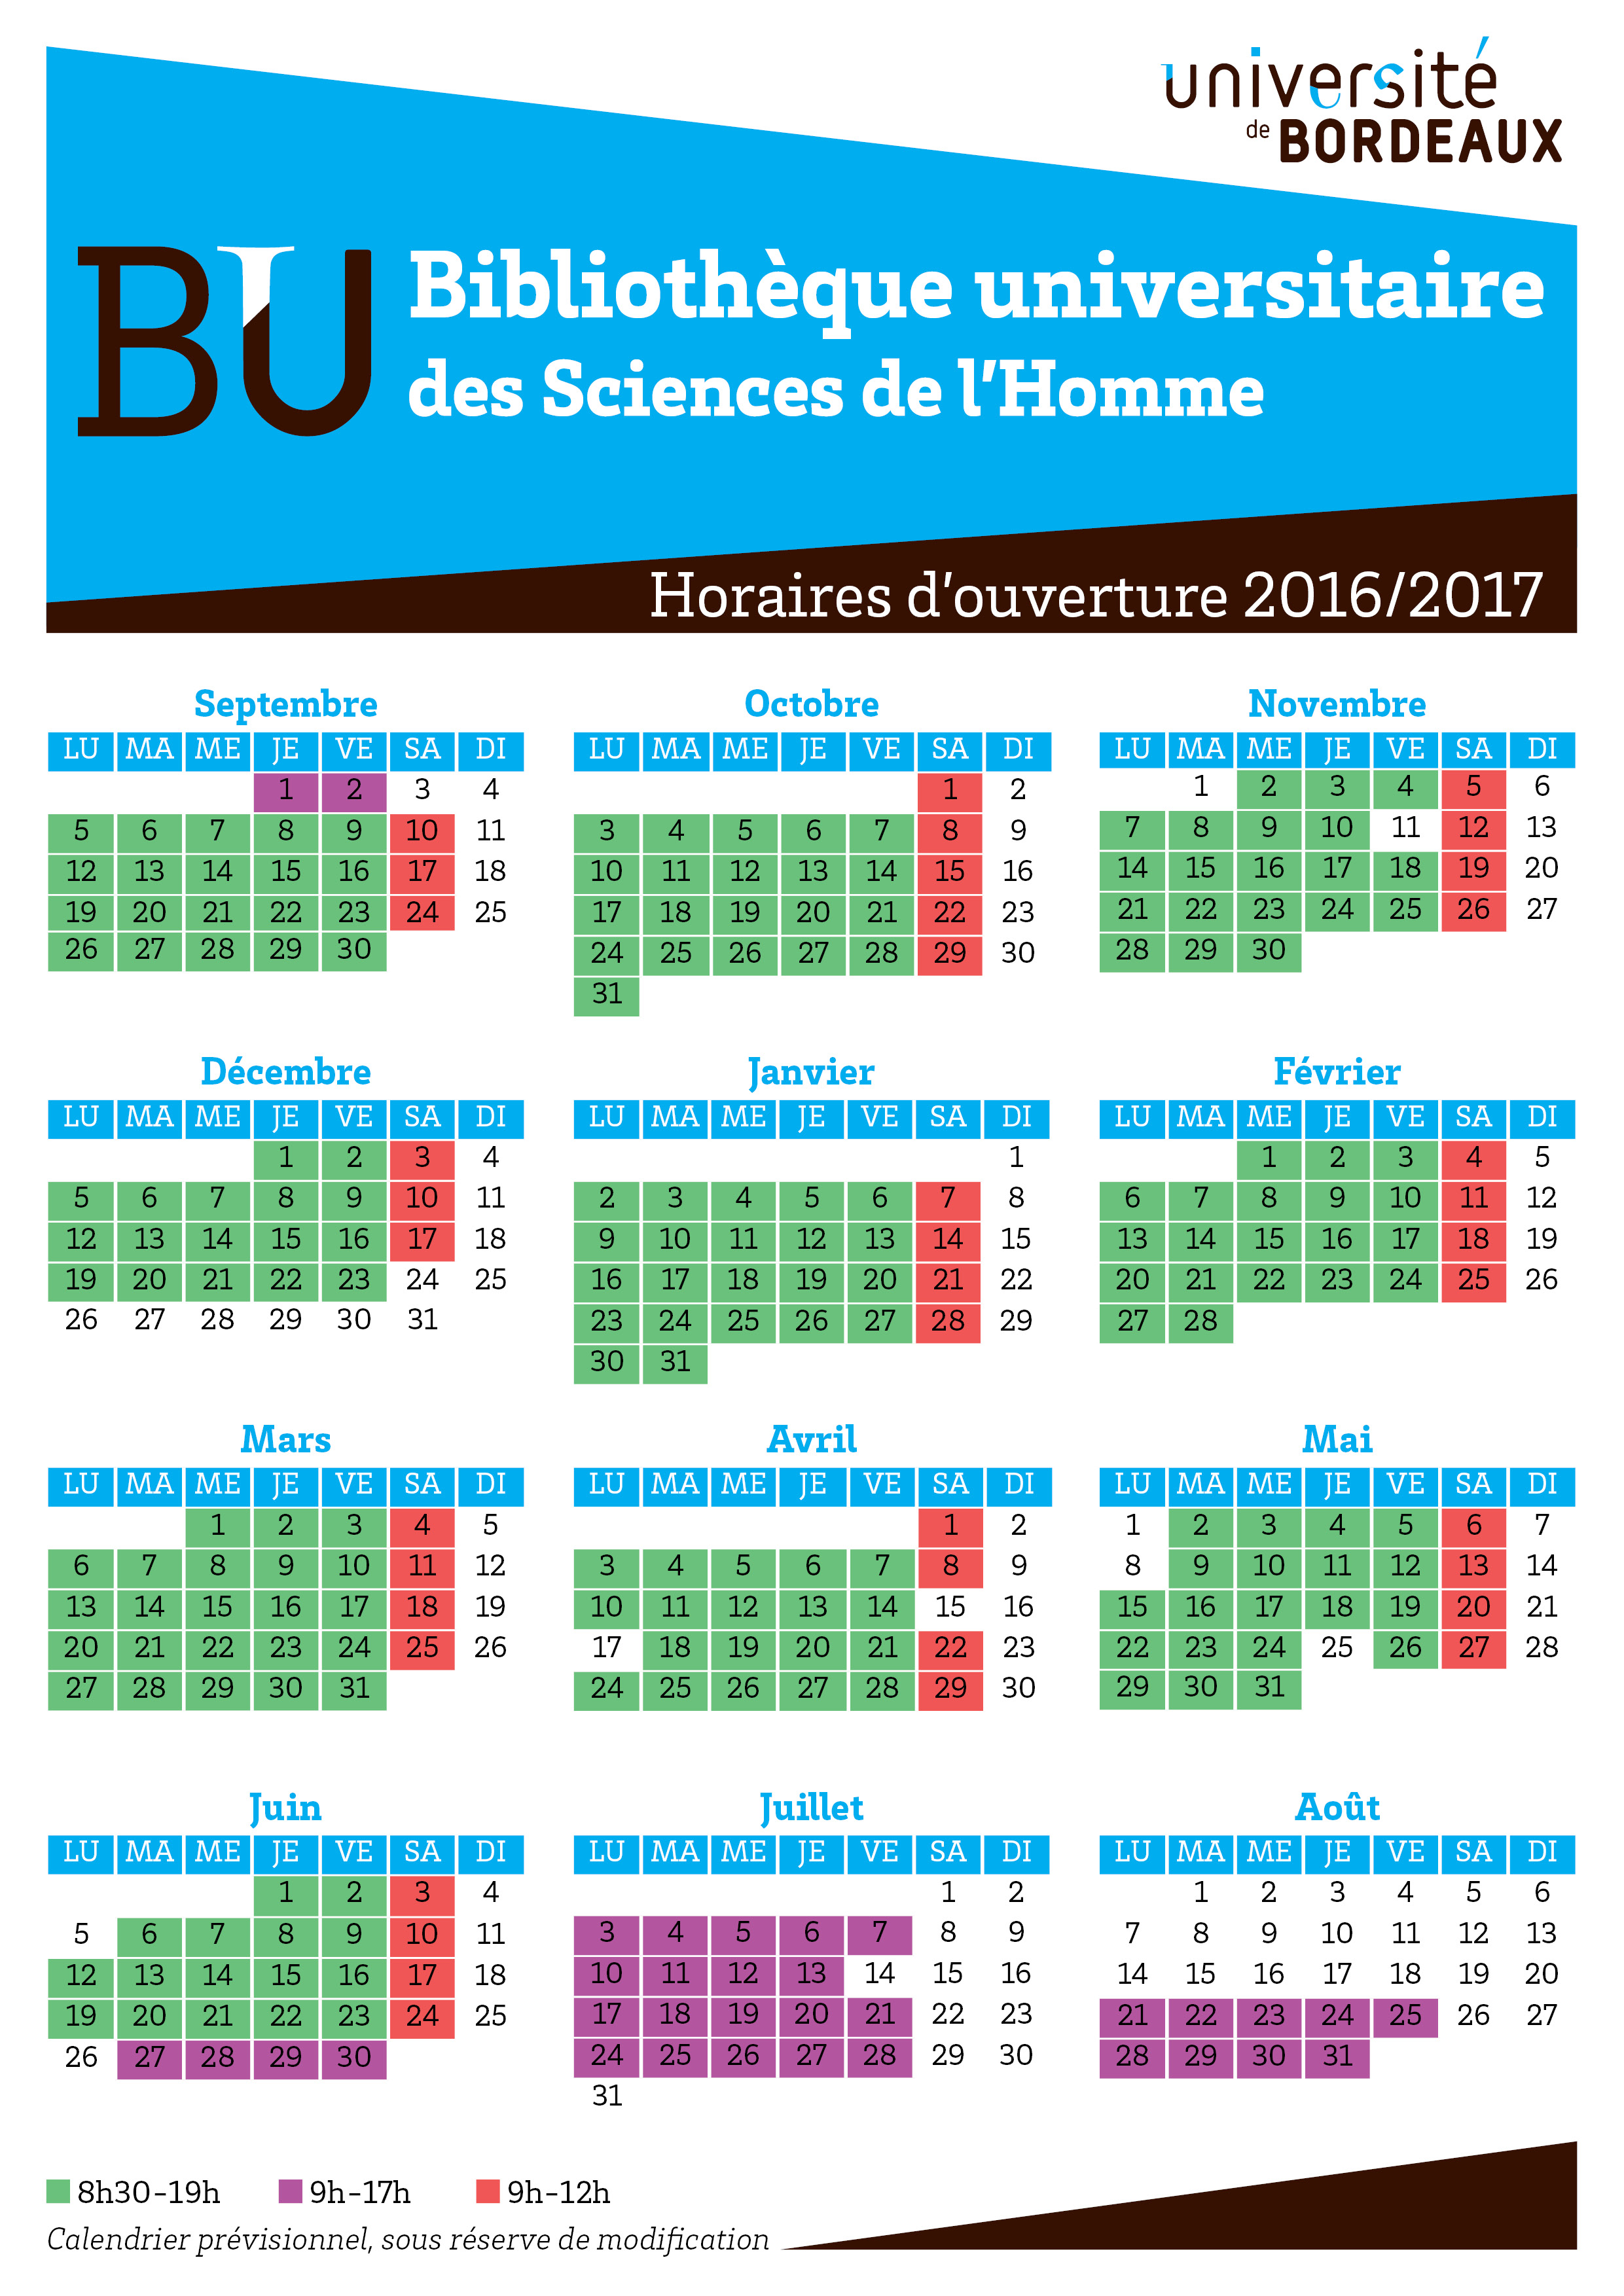 Horaires BUSH 2016-2017